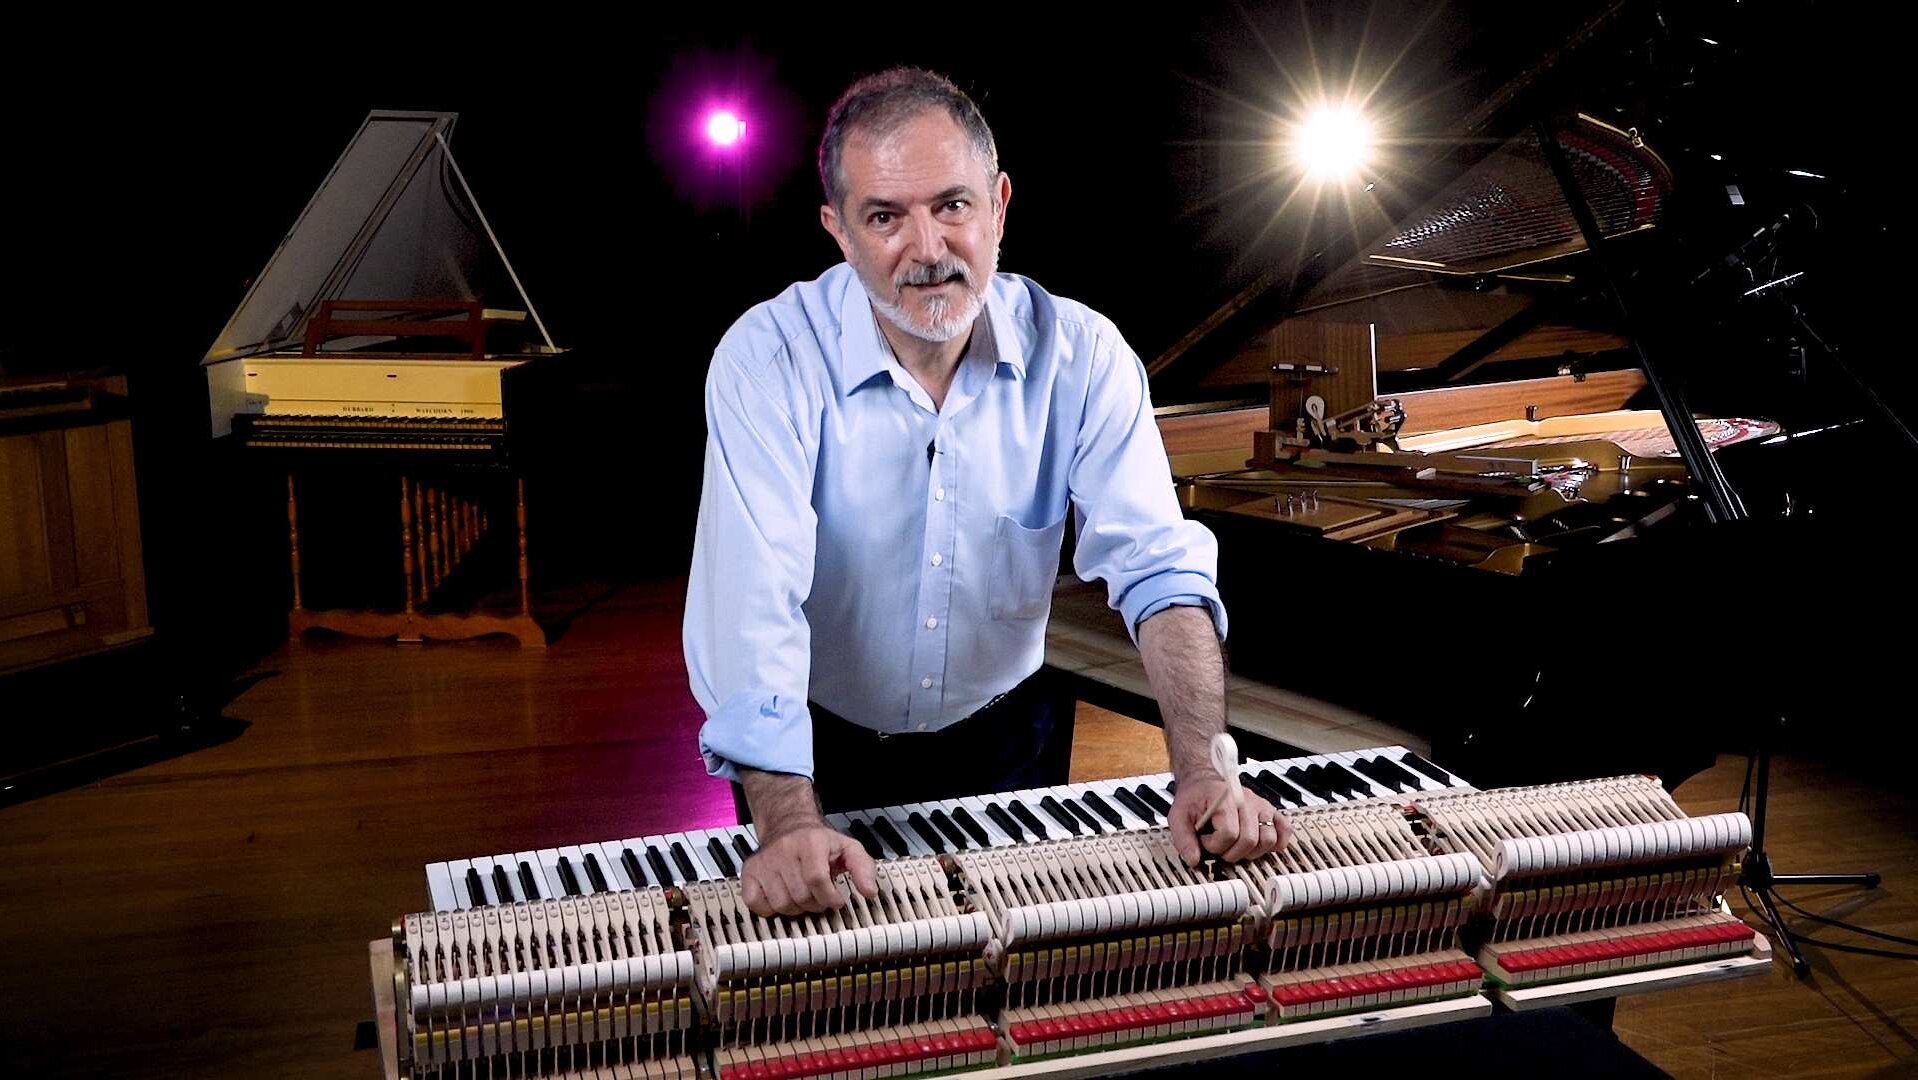 vale australian piano technician ara vartoukian, who has died aged 64